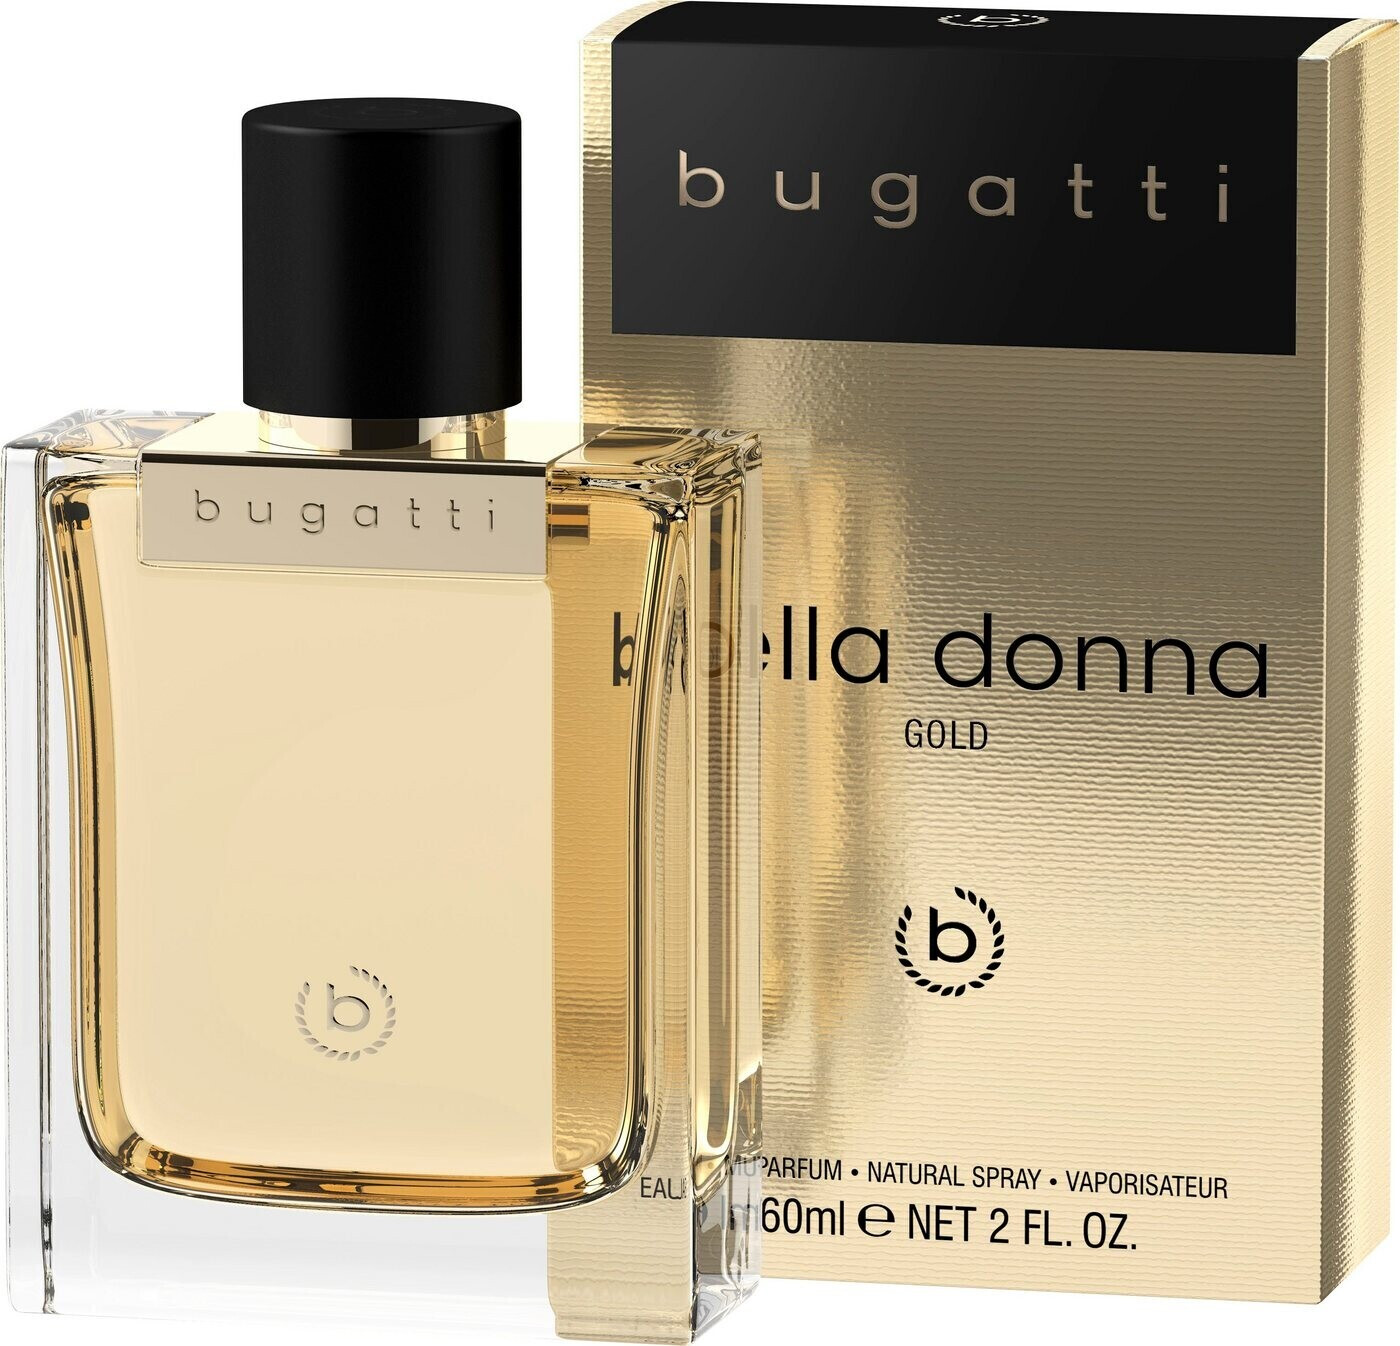 Bugatti Bella Donna Gold Eau (60ml) 16,99 bei ab Parfum Preisvergleich € | de